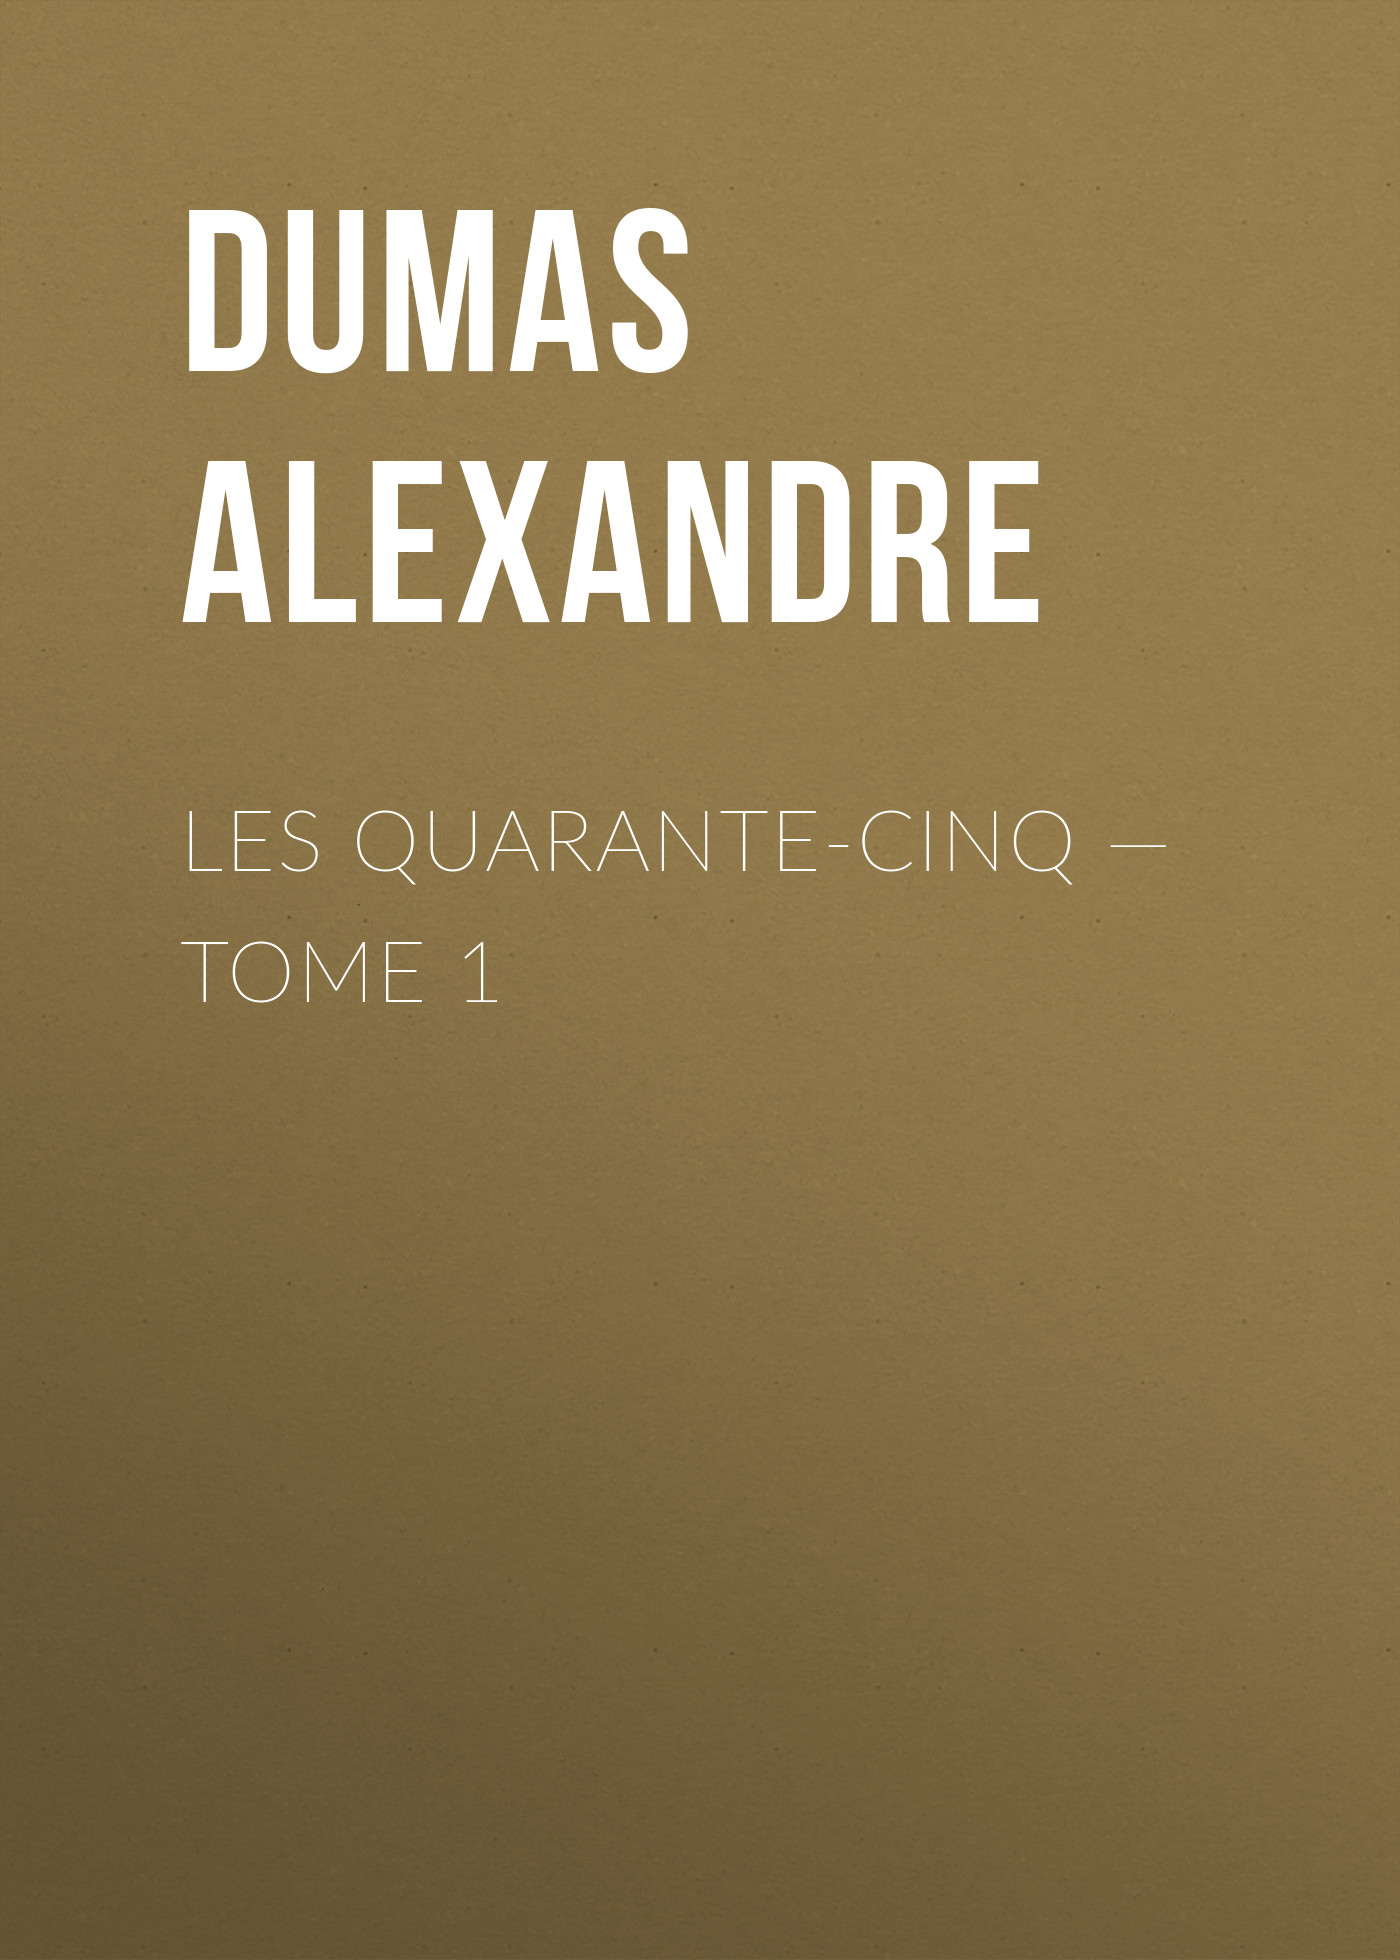 Книга Les Quarante-Cinq – Tome 1 из серии , созданная Alexandre Dumas, может относится к жанру Литература 19 века, Зарубежная старинная литература, Зарубежная классика. Стоимость электронной книги Les Quarante-Cinq – Tome 1 с идентификатором 25203559 составляет 0 руб.